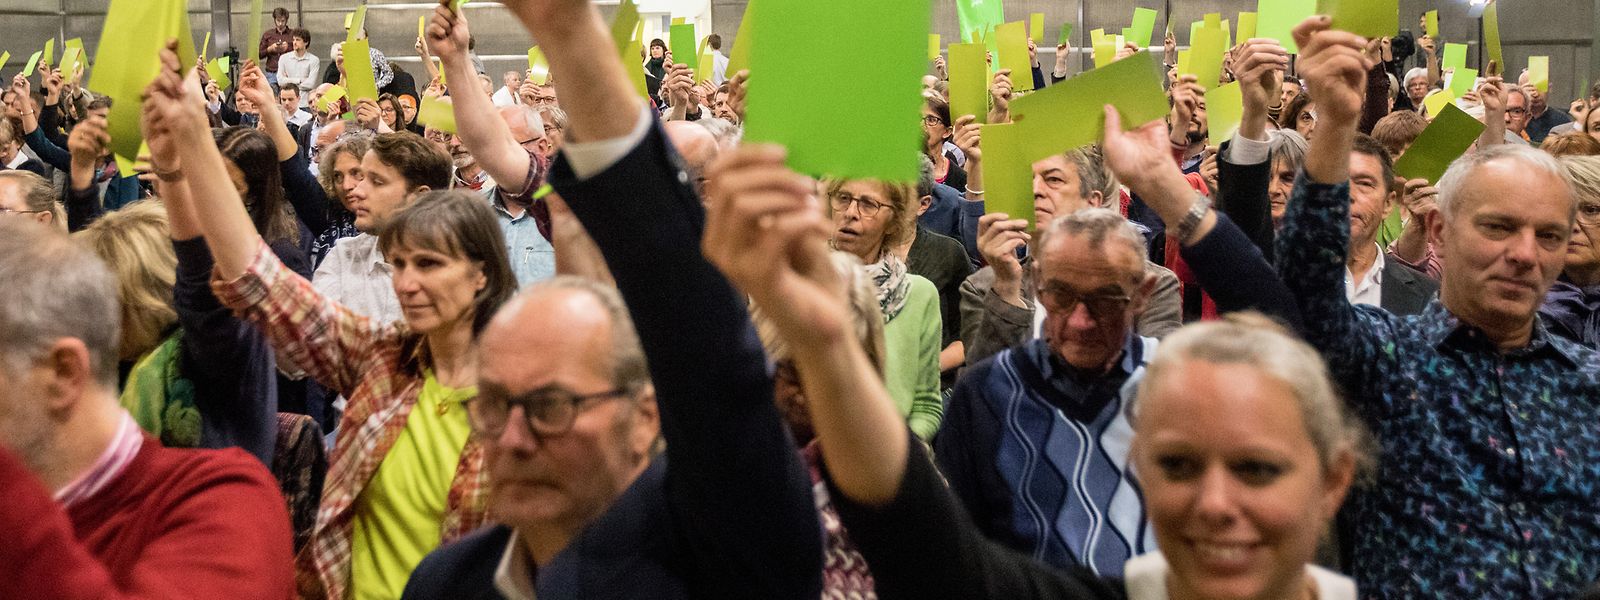 Grünes Licht gibt es dieses Mal höchstens virtuell: Déi Gréng haben gegen einen Kongress mit physischer Anwesenheit und für eine digitale Alternative gestimmt. Die Entscheidung fiel genauso einstimmig wie bei so mancher Abstimmung auf dem jüngsten Parteitag im Oktober 2019.